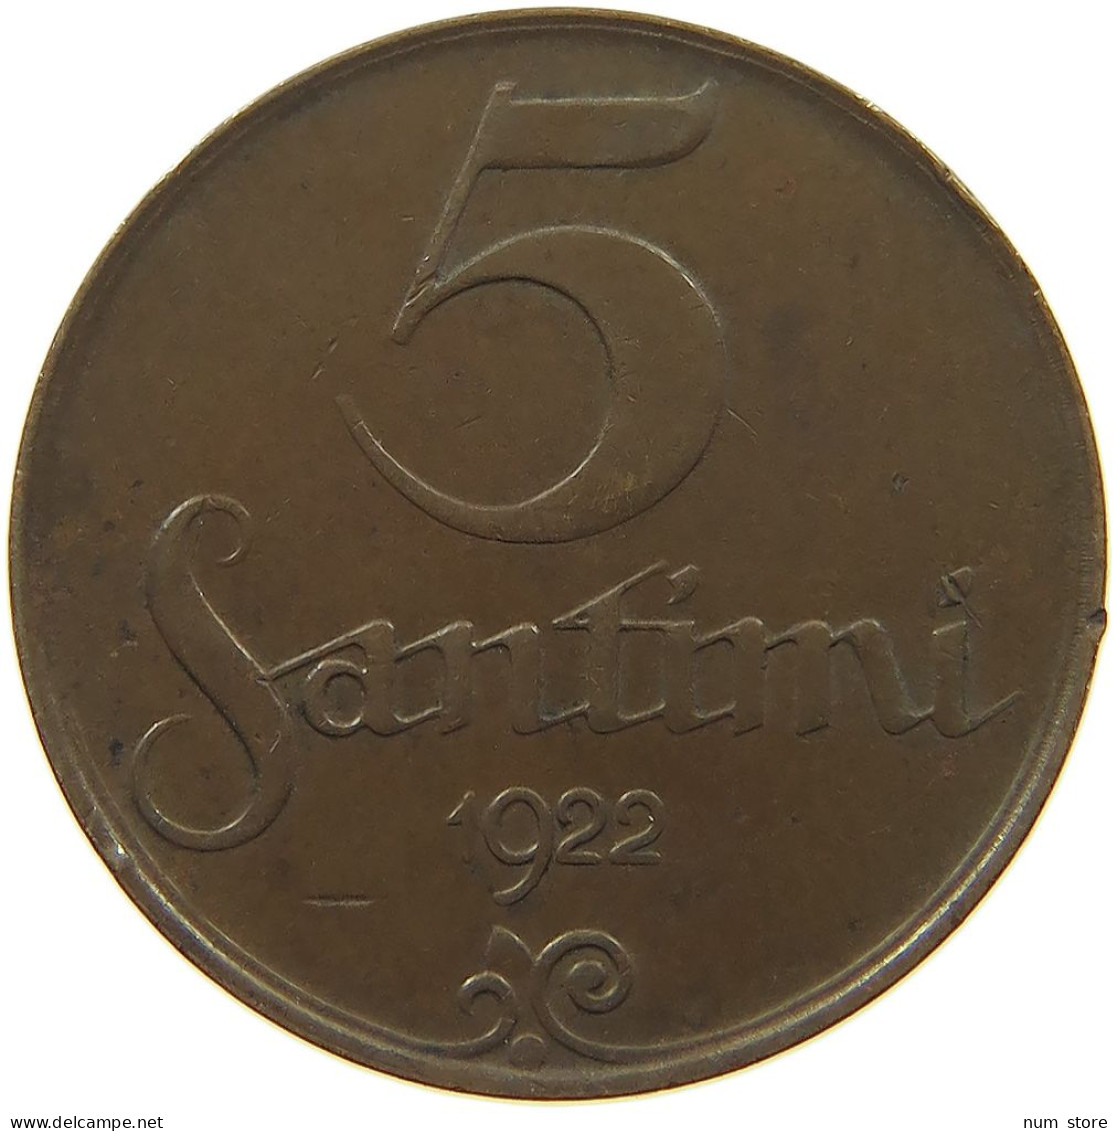 LATVIA 5 SANTIMI 1922  #c080 0687 - Latvia